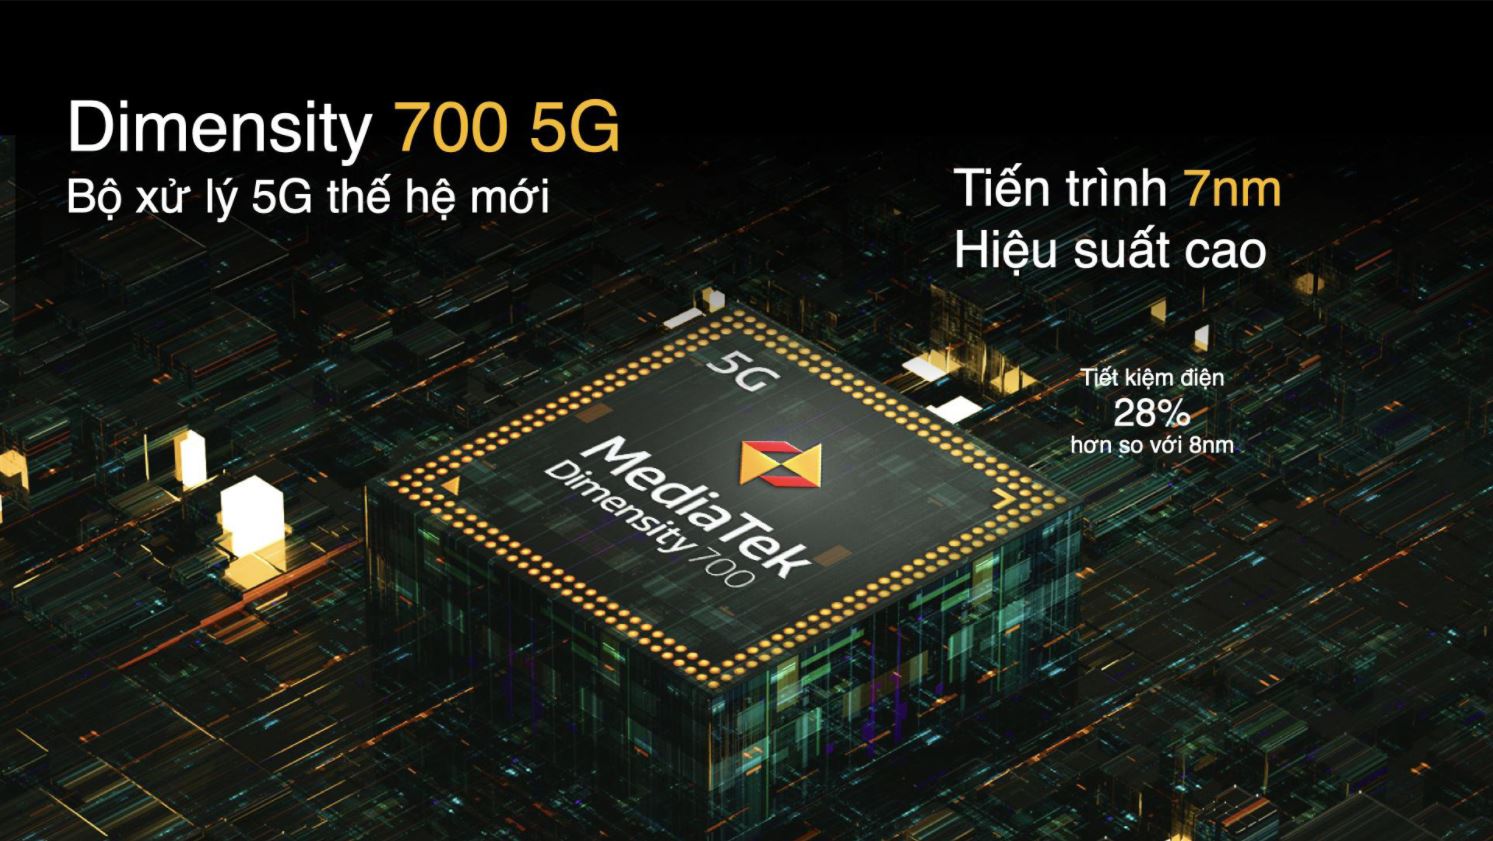 realme 8 5G được trang bị chip xử lý Dimensity 700 5G thế hệ mới tân tiến, hiệu năng đột phá